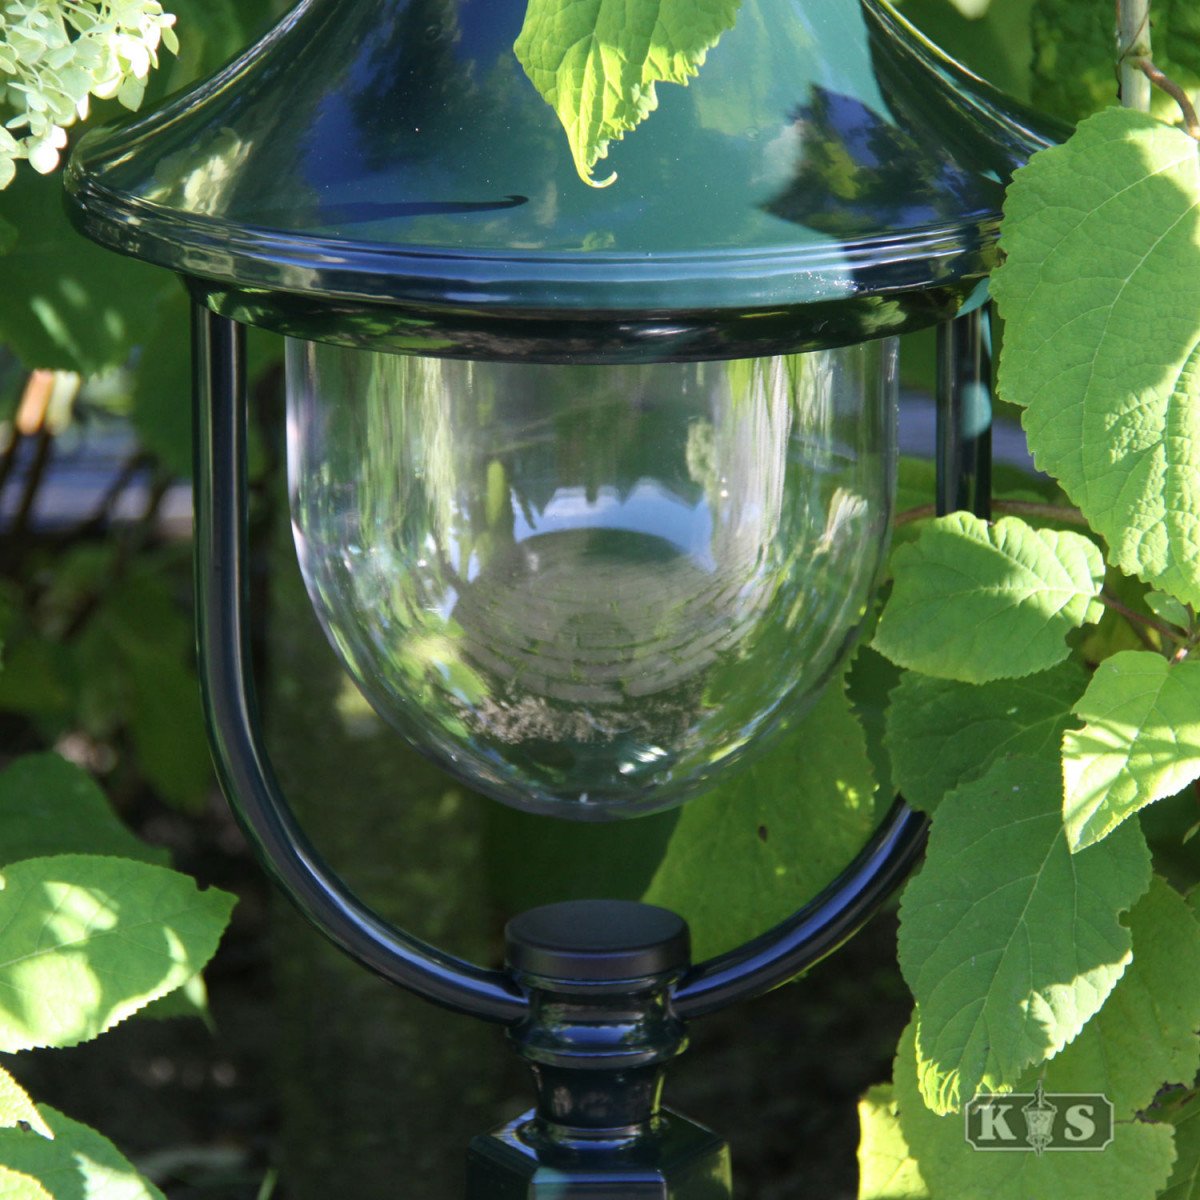 Garden lamp post Ravenna